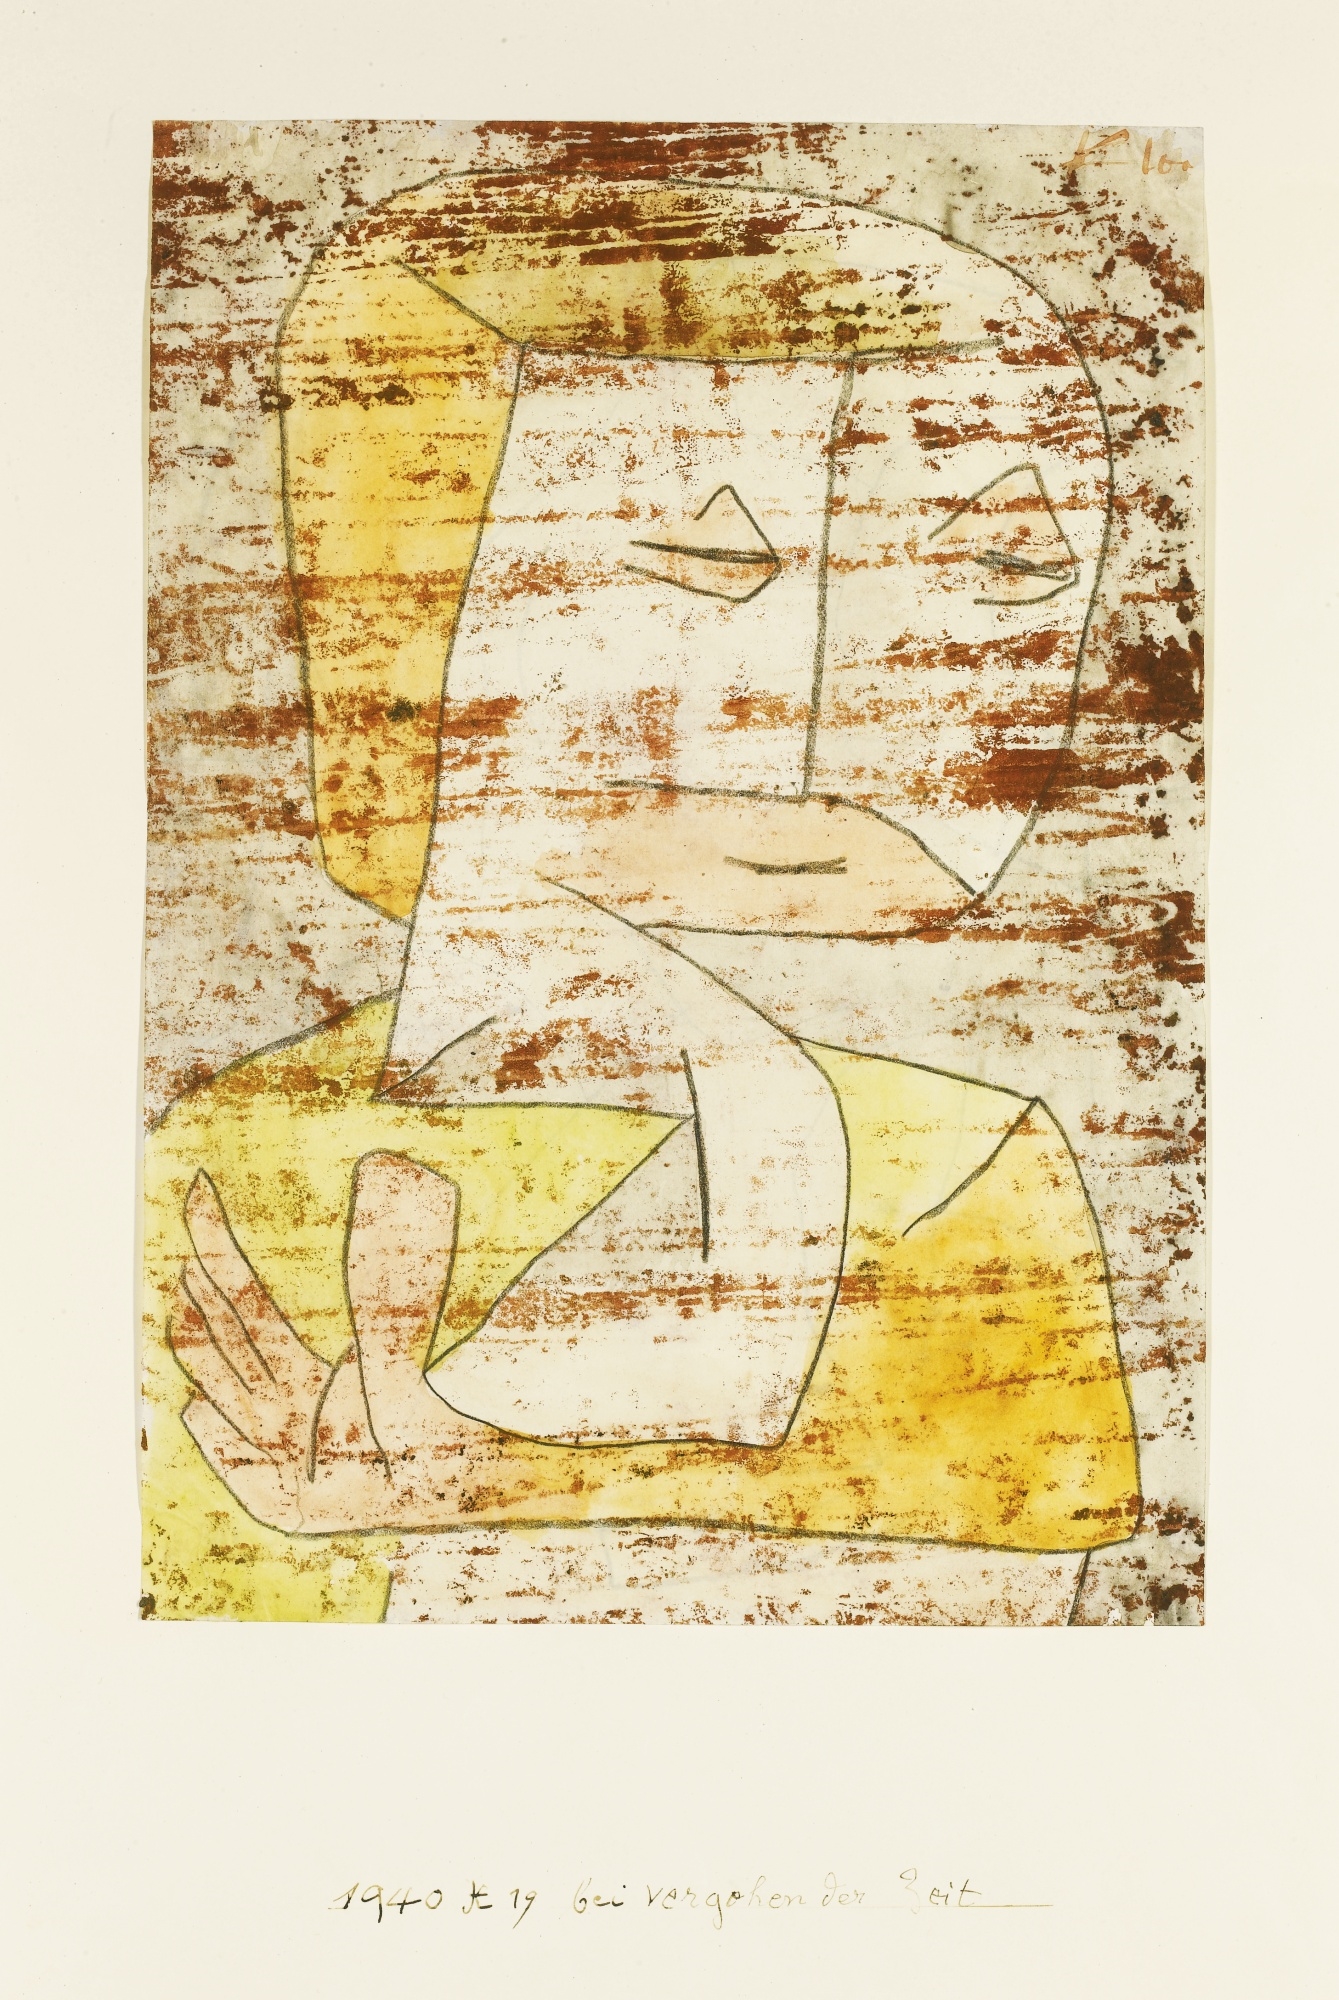 BEI VERGEHENDER ZEIT (AS TIME PASSES BY) by Paul Klee, 1940